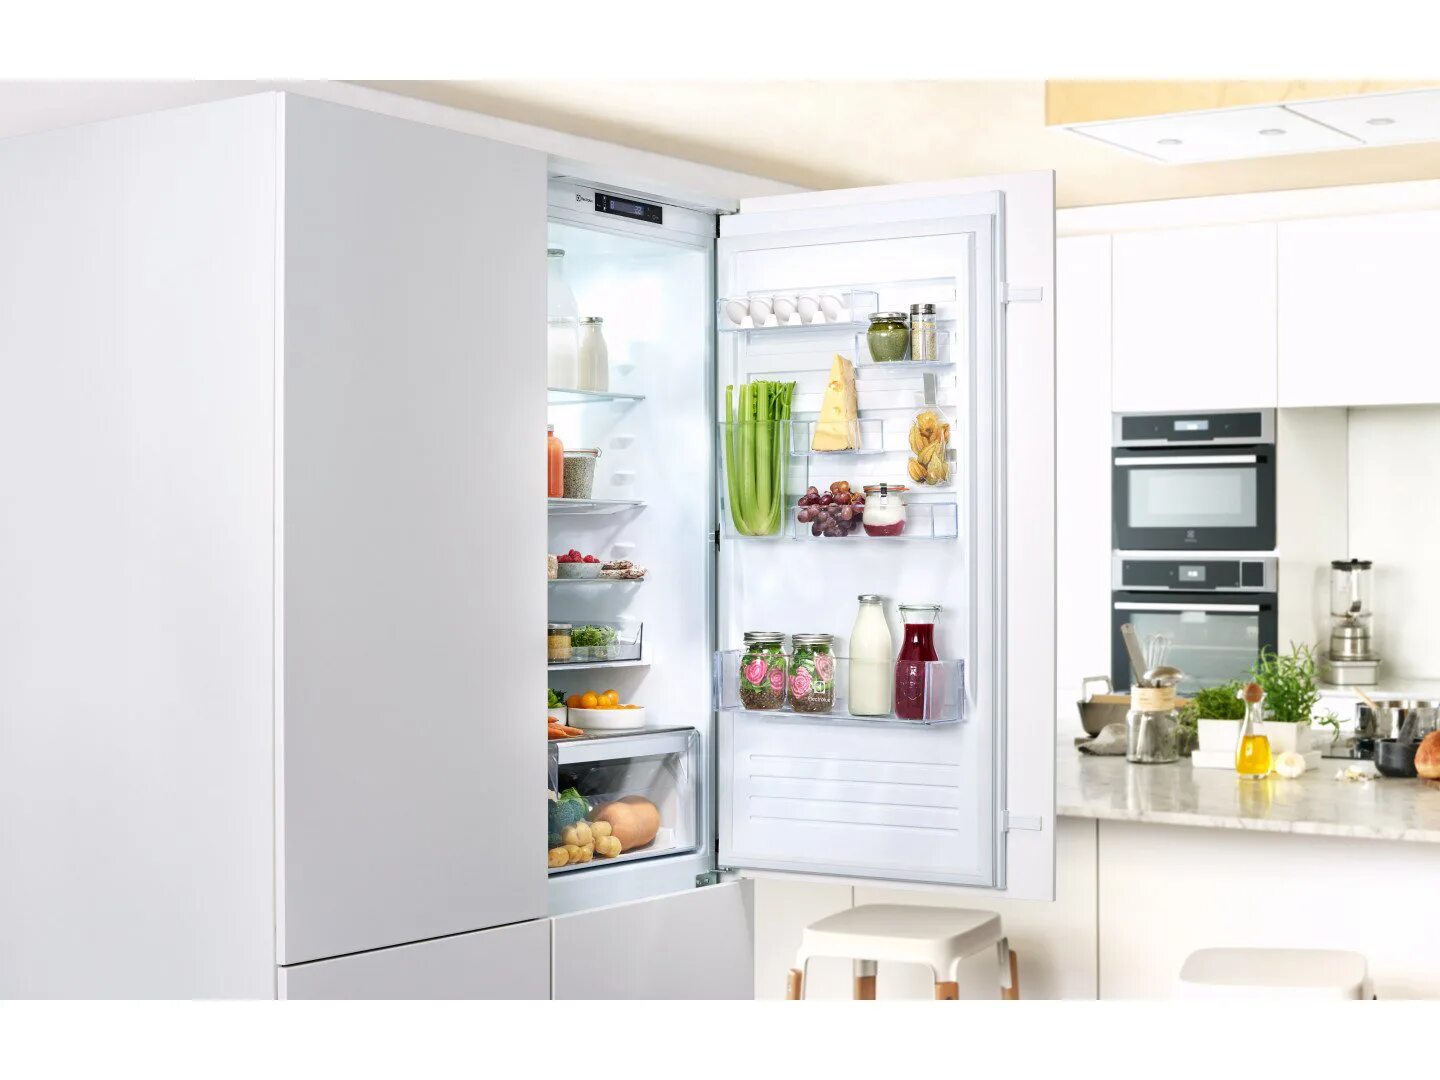 Встраиваемый холодильник Electrolux enn3074efw. Встроенный холодильник Электролюкс. Встраиваемый холодильник Электролюкс. Встраиваемый холодильник Electrolux enn.